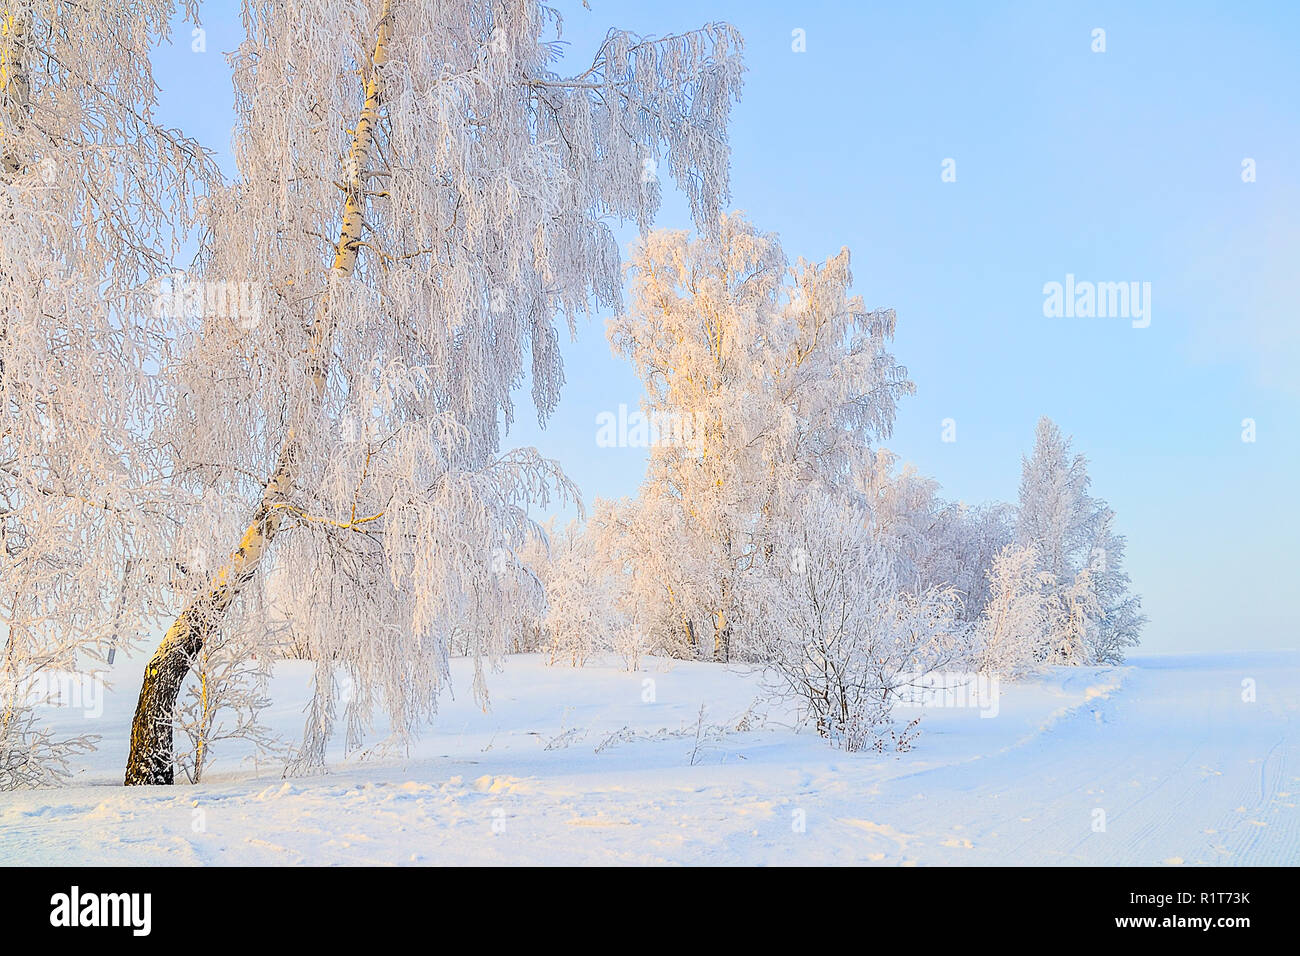 Winterlandschaft - Birken mit Raureif an Sonnenstrahlen der untergehenden Sonne - Märchen von der frostigen Winter Natur abgedeckt Stockfoto